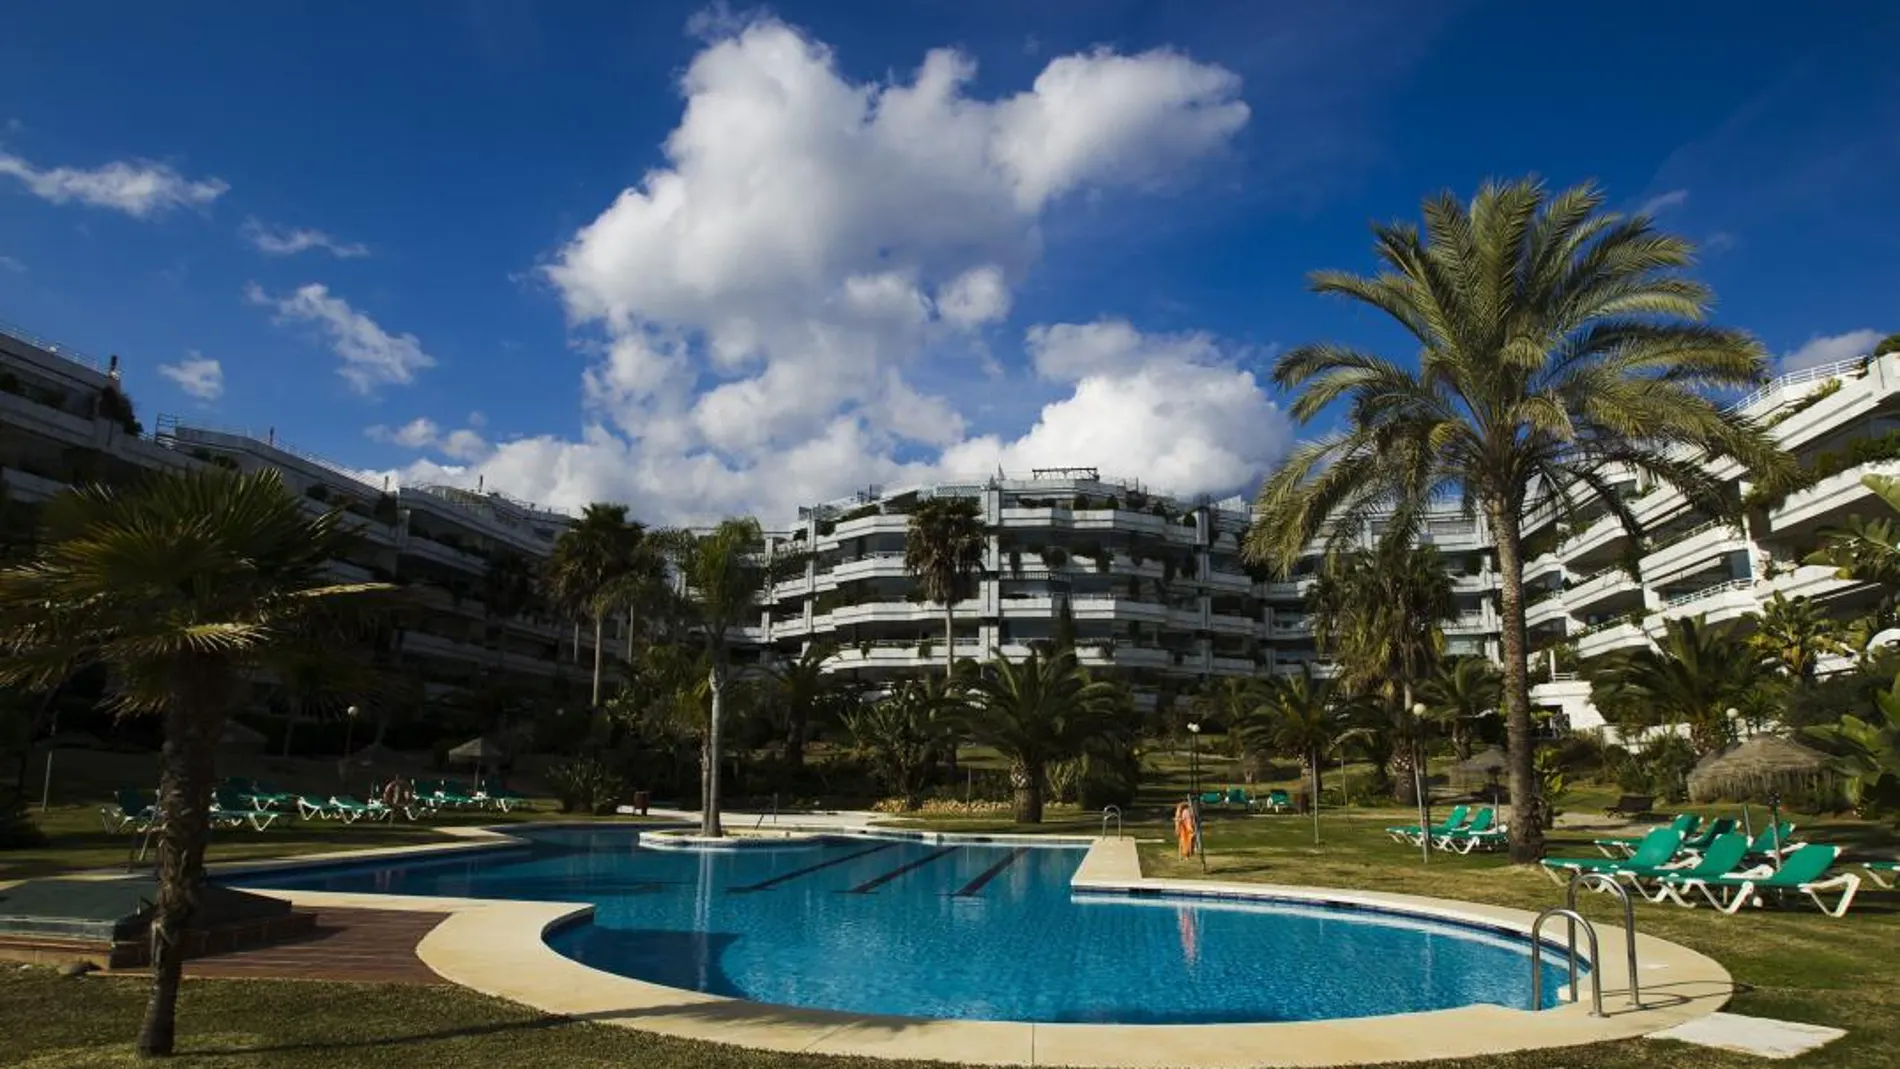 El turismo en Marbella recurre cada vez más a las viviendas vacacionales en lugar de a los apartamentos turísticos